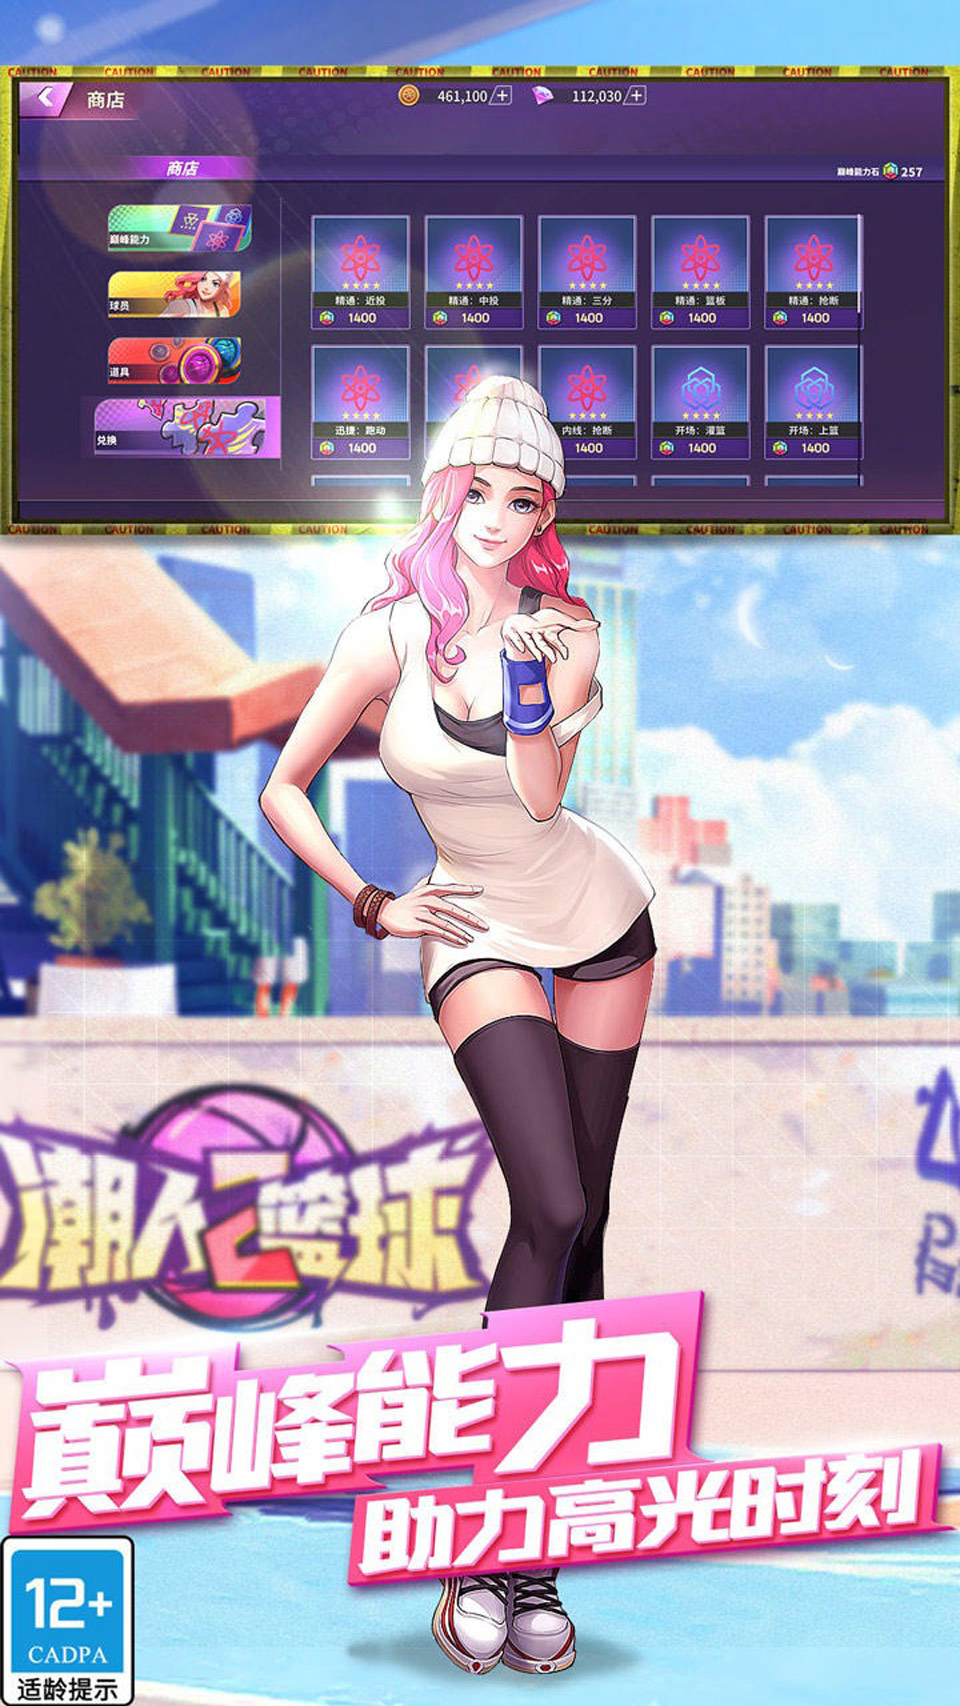 潮人篮球2破解版下载iOS版